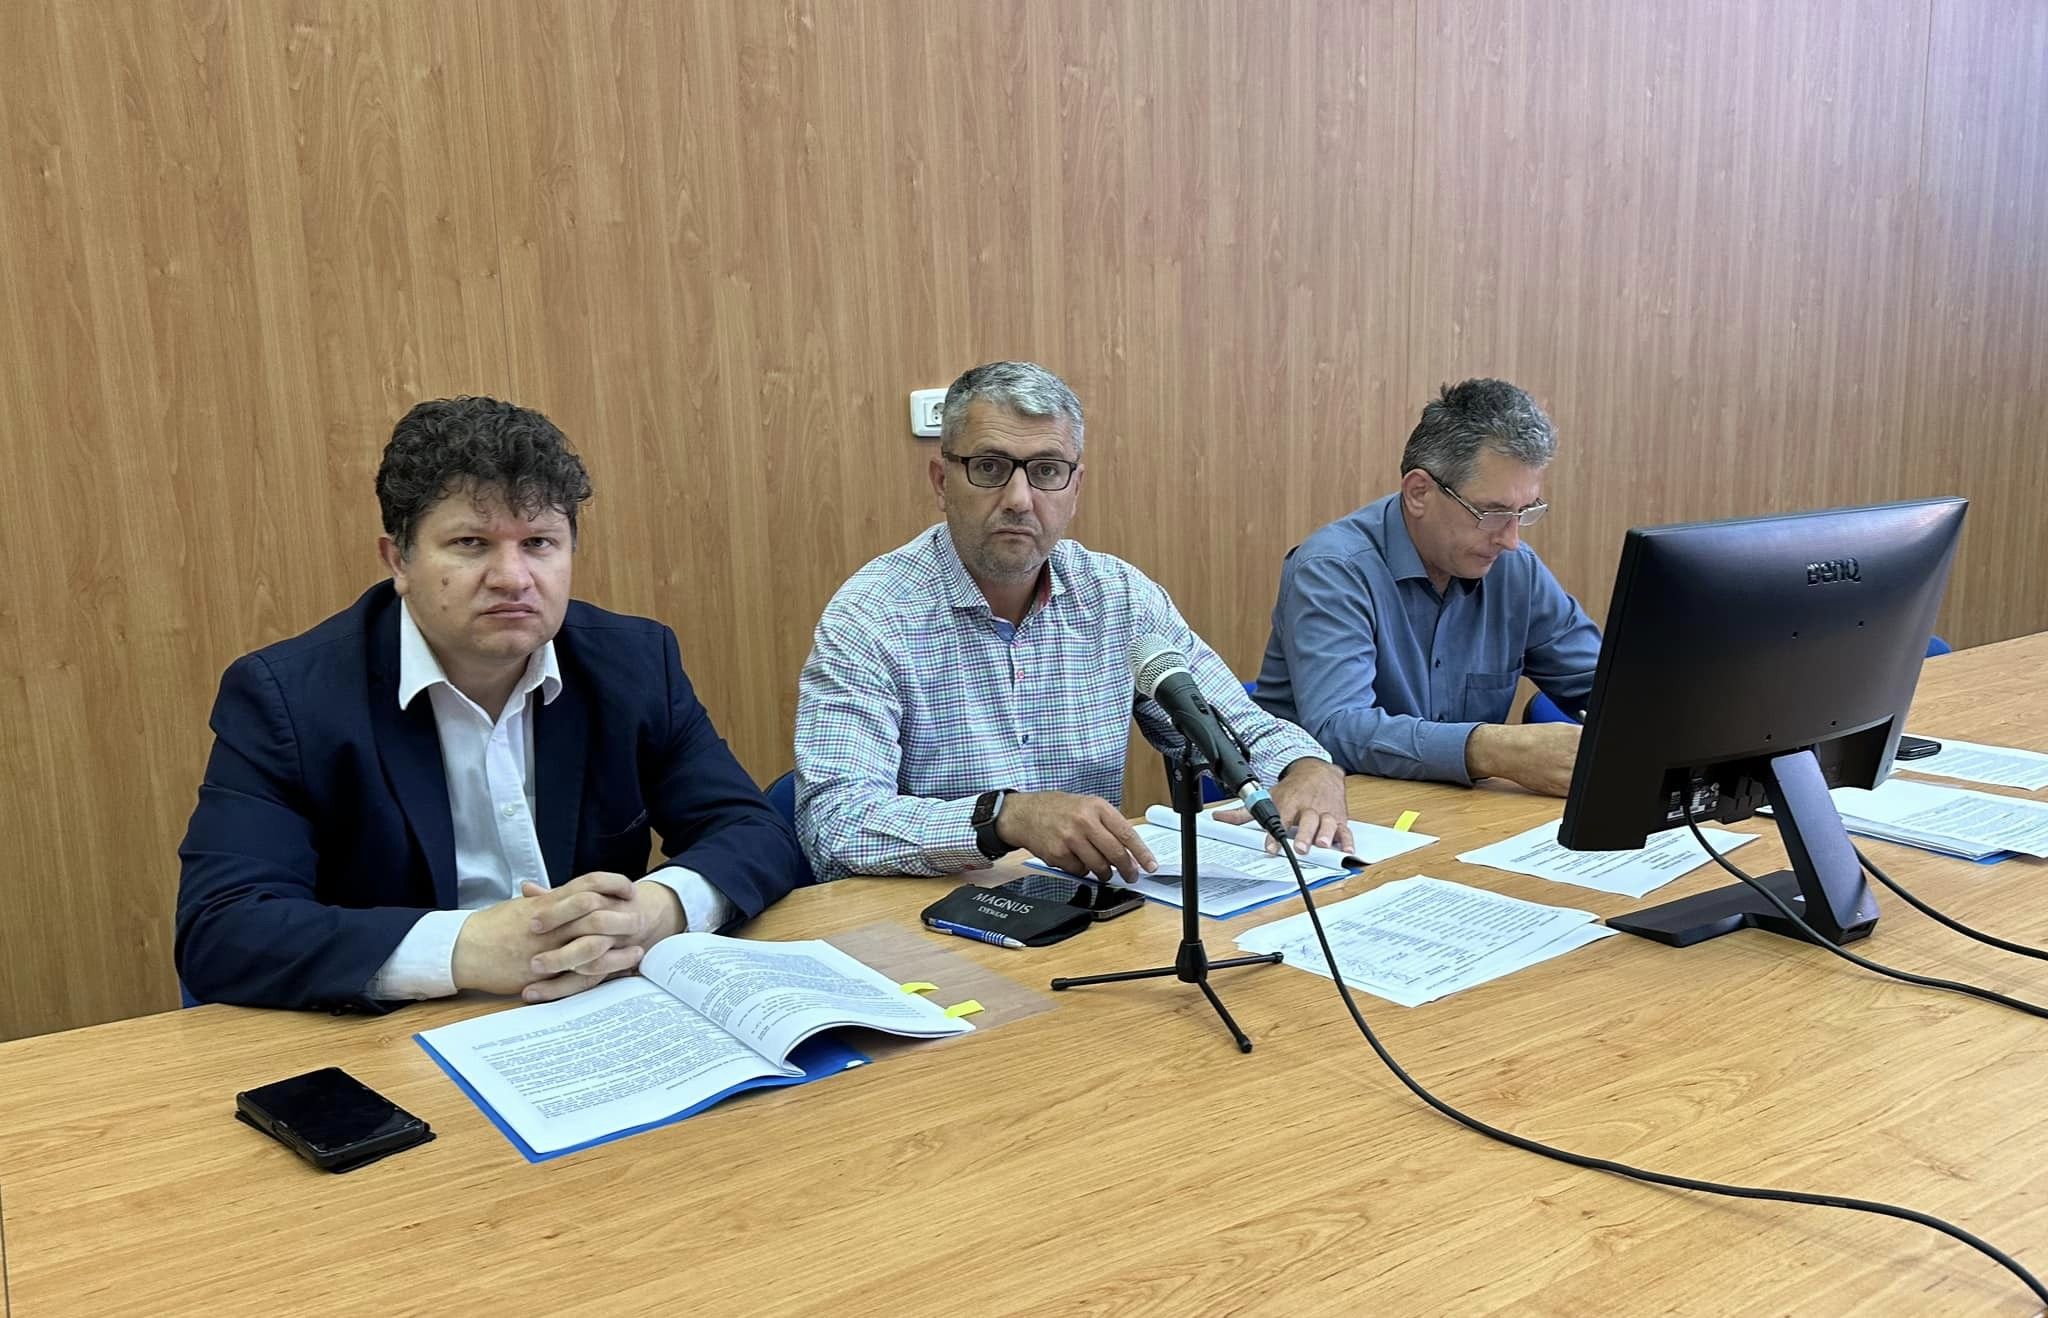 Prefectul județului Hunedoara, Călin Petru Marian: „Modernizarea serviciilor publice pentru cetățeni este de maximă prioritate”